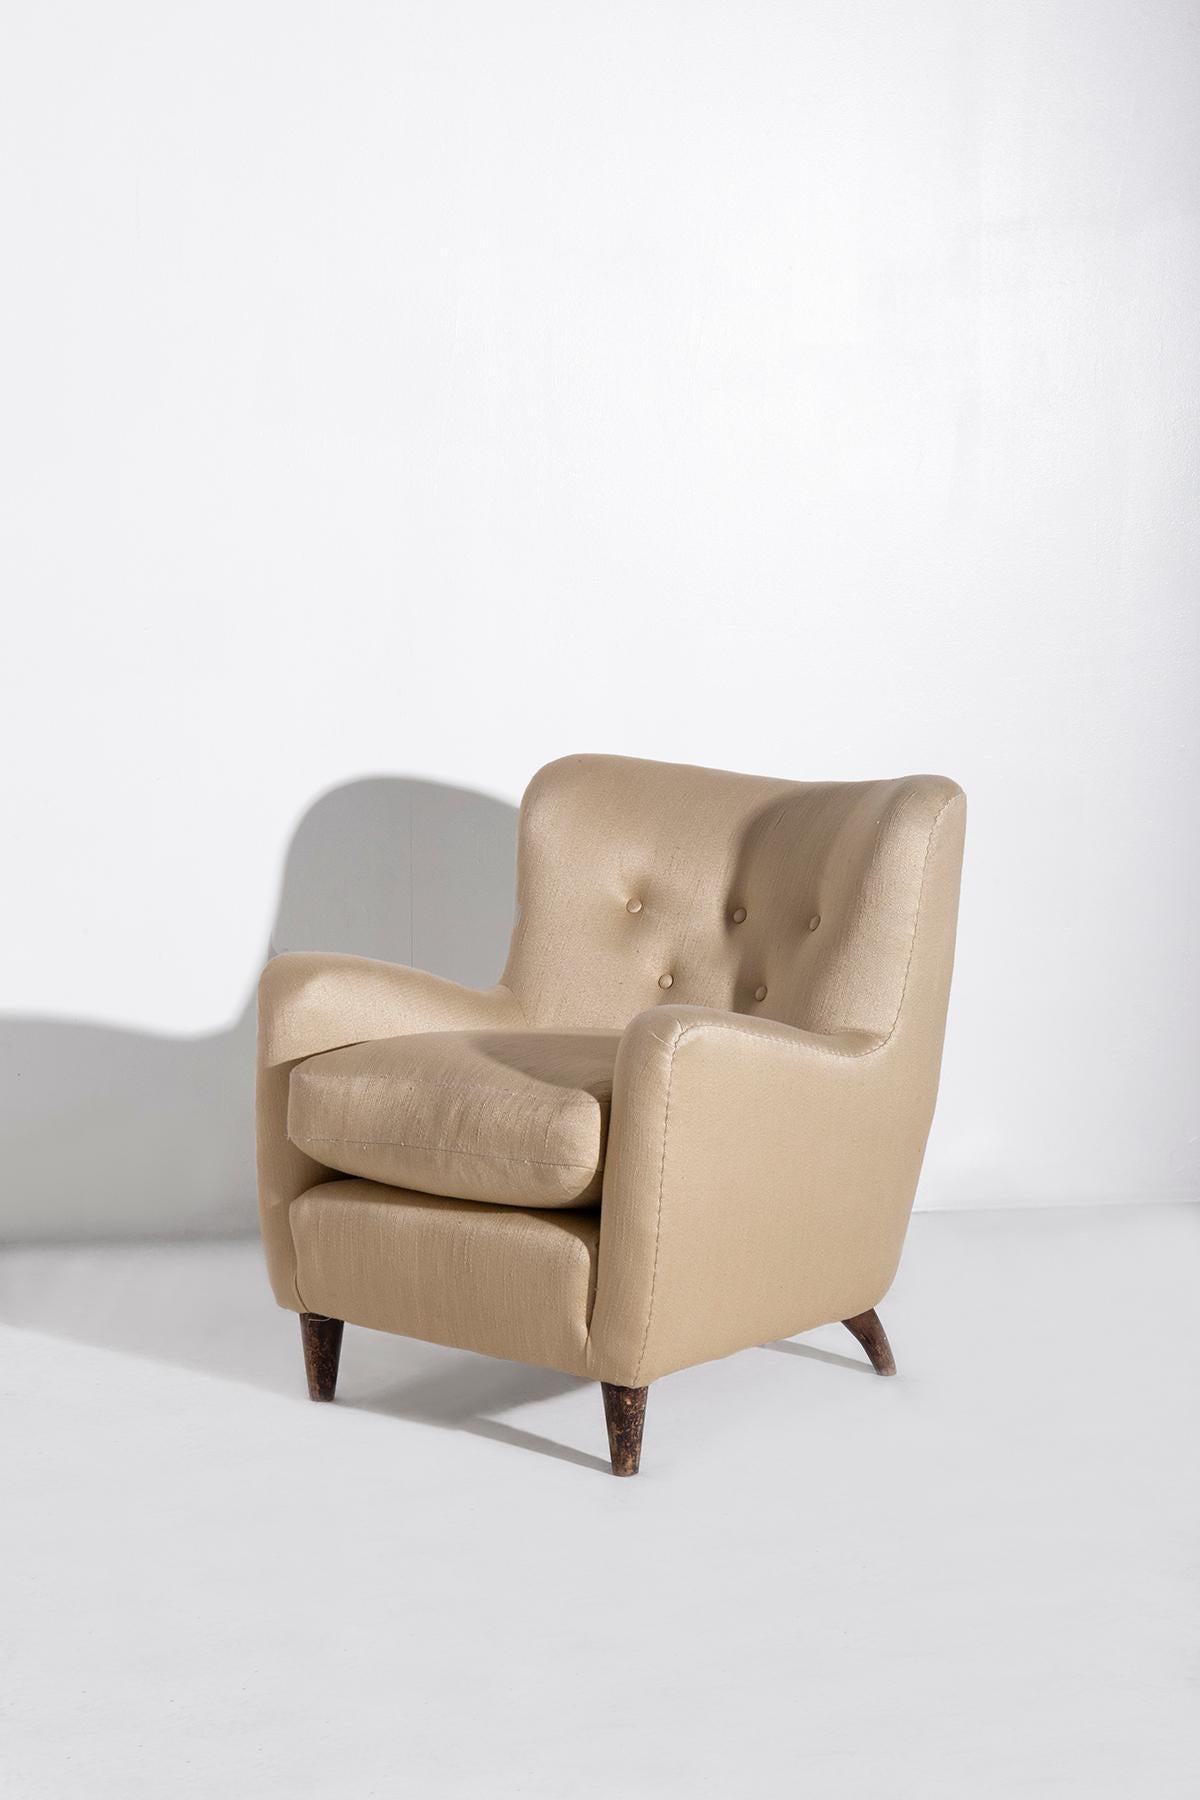 Treten Sie ein in eine Welt, in der die Essenz des italienischen Designs der 1940er Jahre im Mittelpunkt steht, verkörpert durch ein seltenes Paar Sessel, die der legendäre Giò Ponti für ein Marineprojekt entworfen hat. Diese außergewöhnlichen